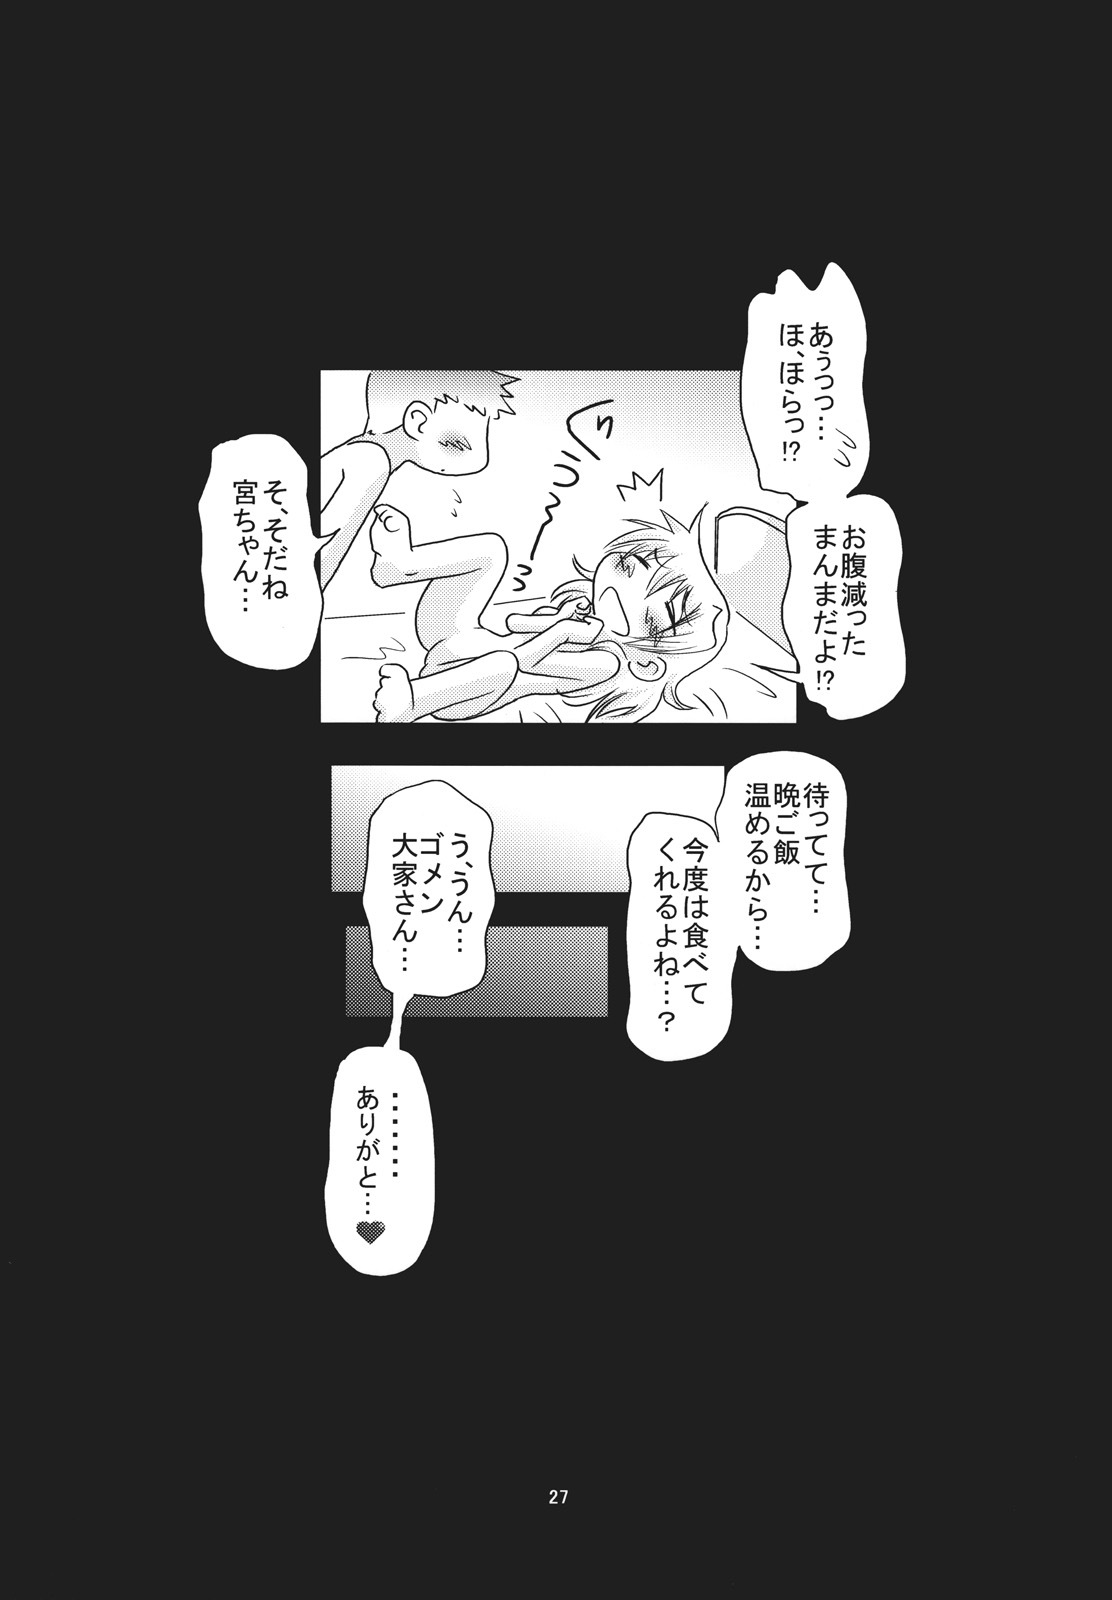 [FESTA. (Yoshitani Ganjitsu)] Taiyou Shoujo (Hidamari Sketch) [2008-03-16] page 26 full